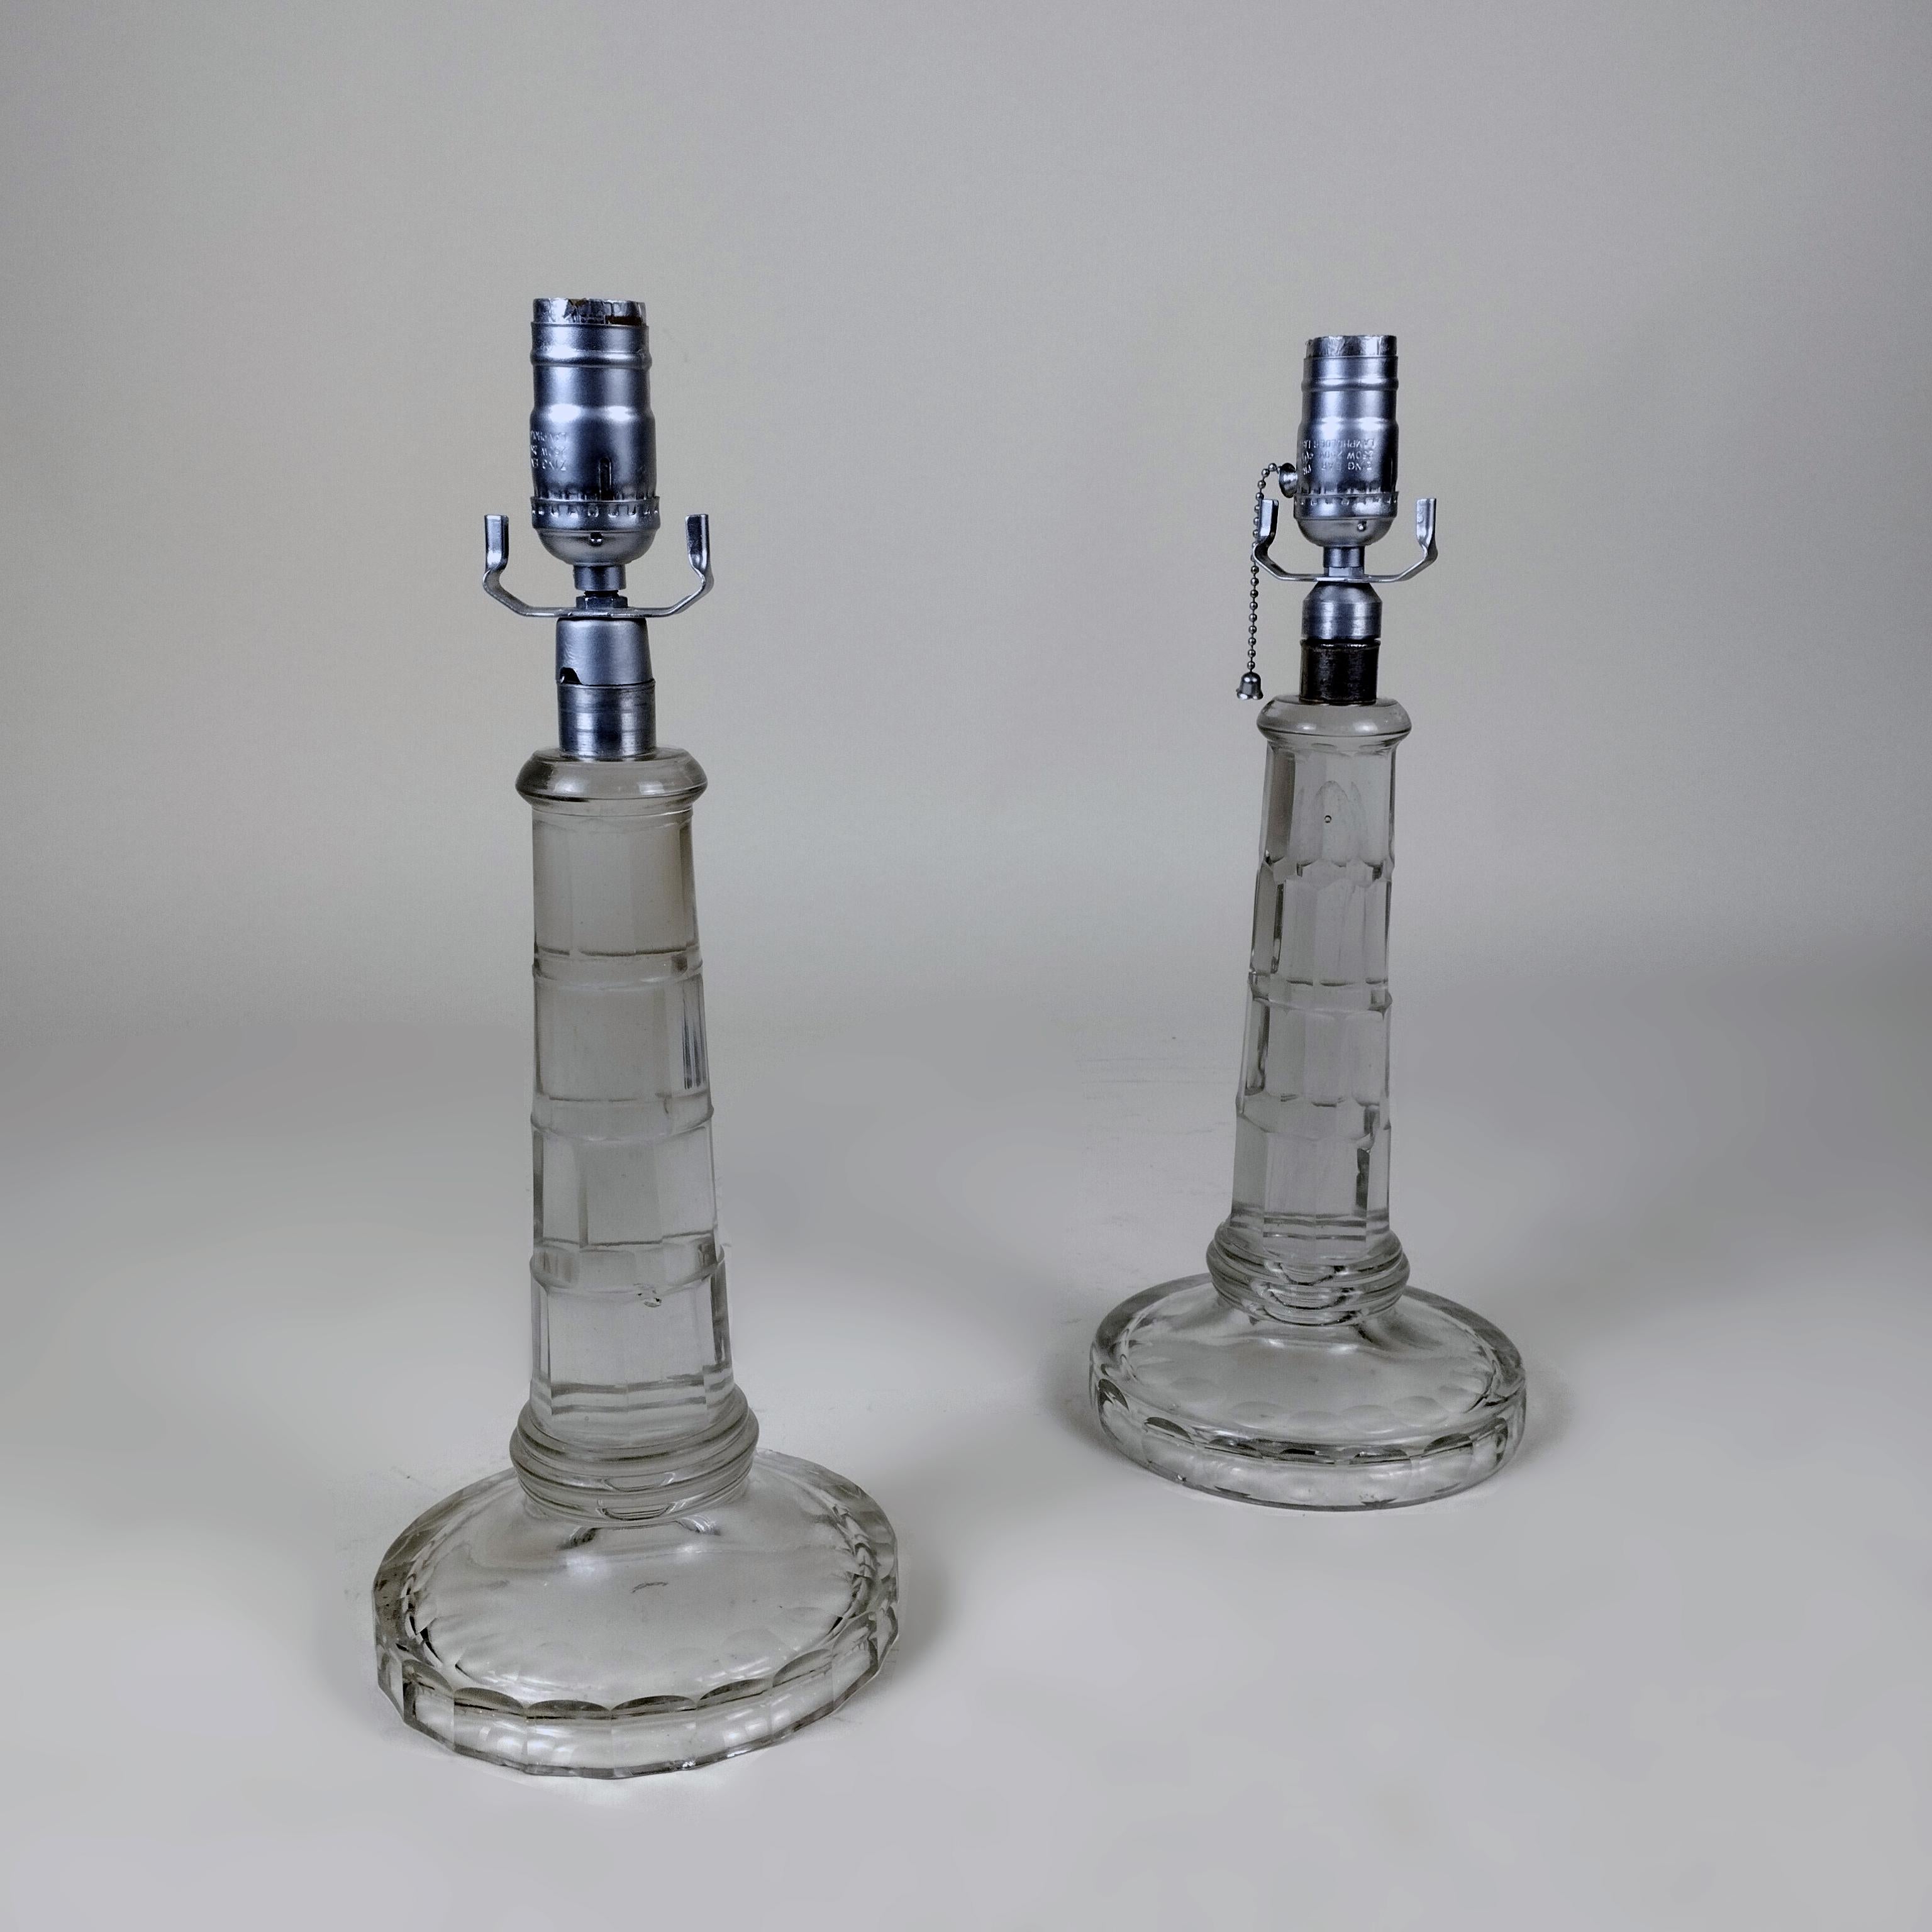 Une paire de lampes de table en verre taillé des années 1960. Le corps en verre présente un design en forme de facette. Les douilles et les supports d'abat-jour sont en métal argenté. Pas d'abat-jour inclus.